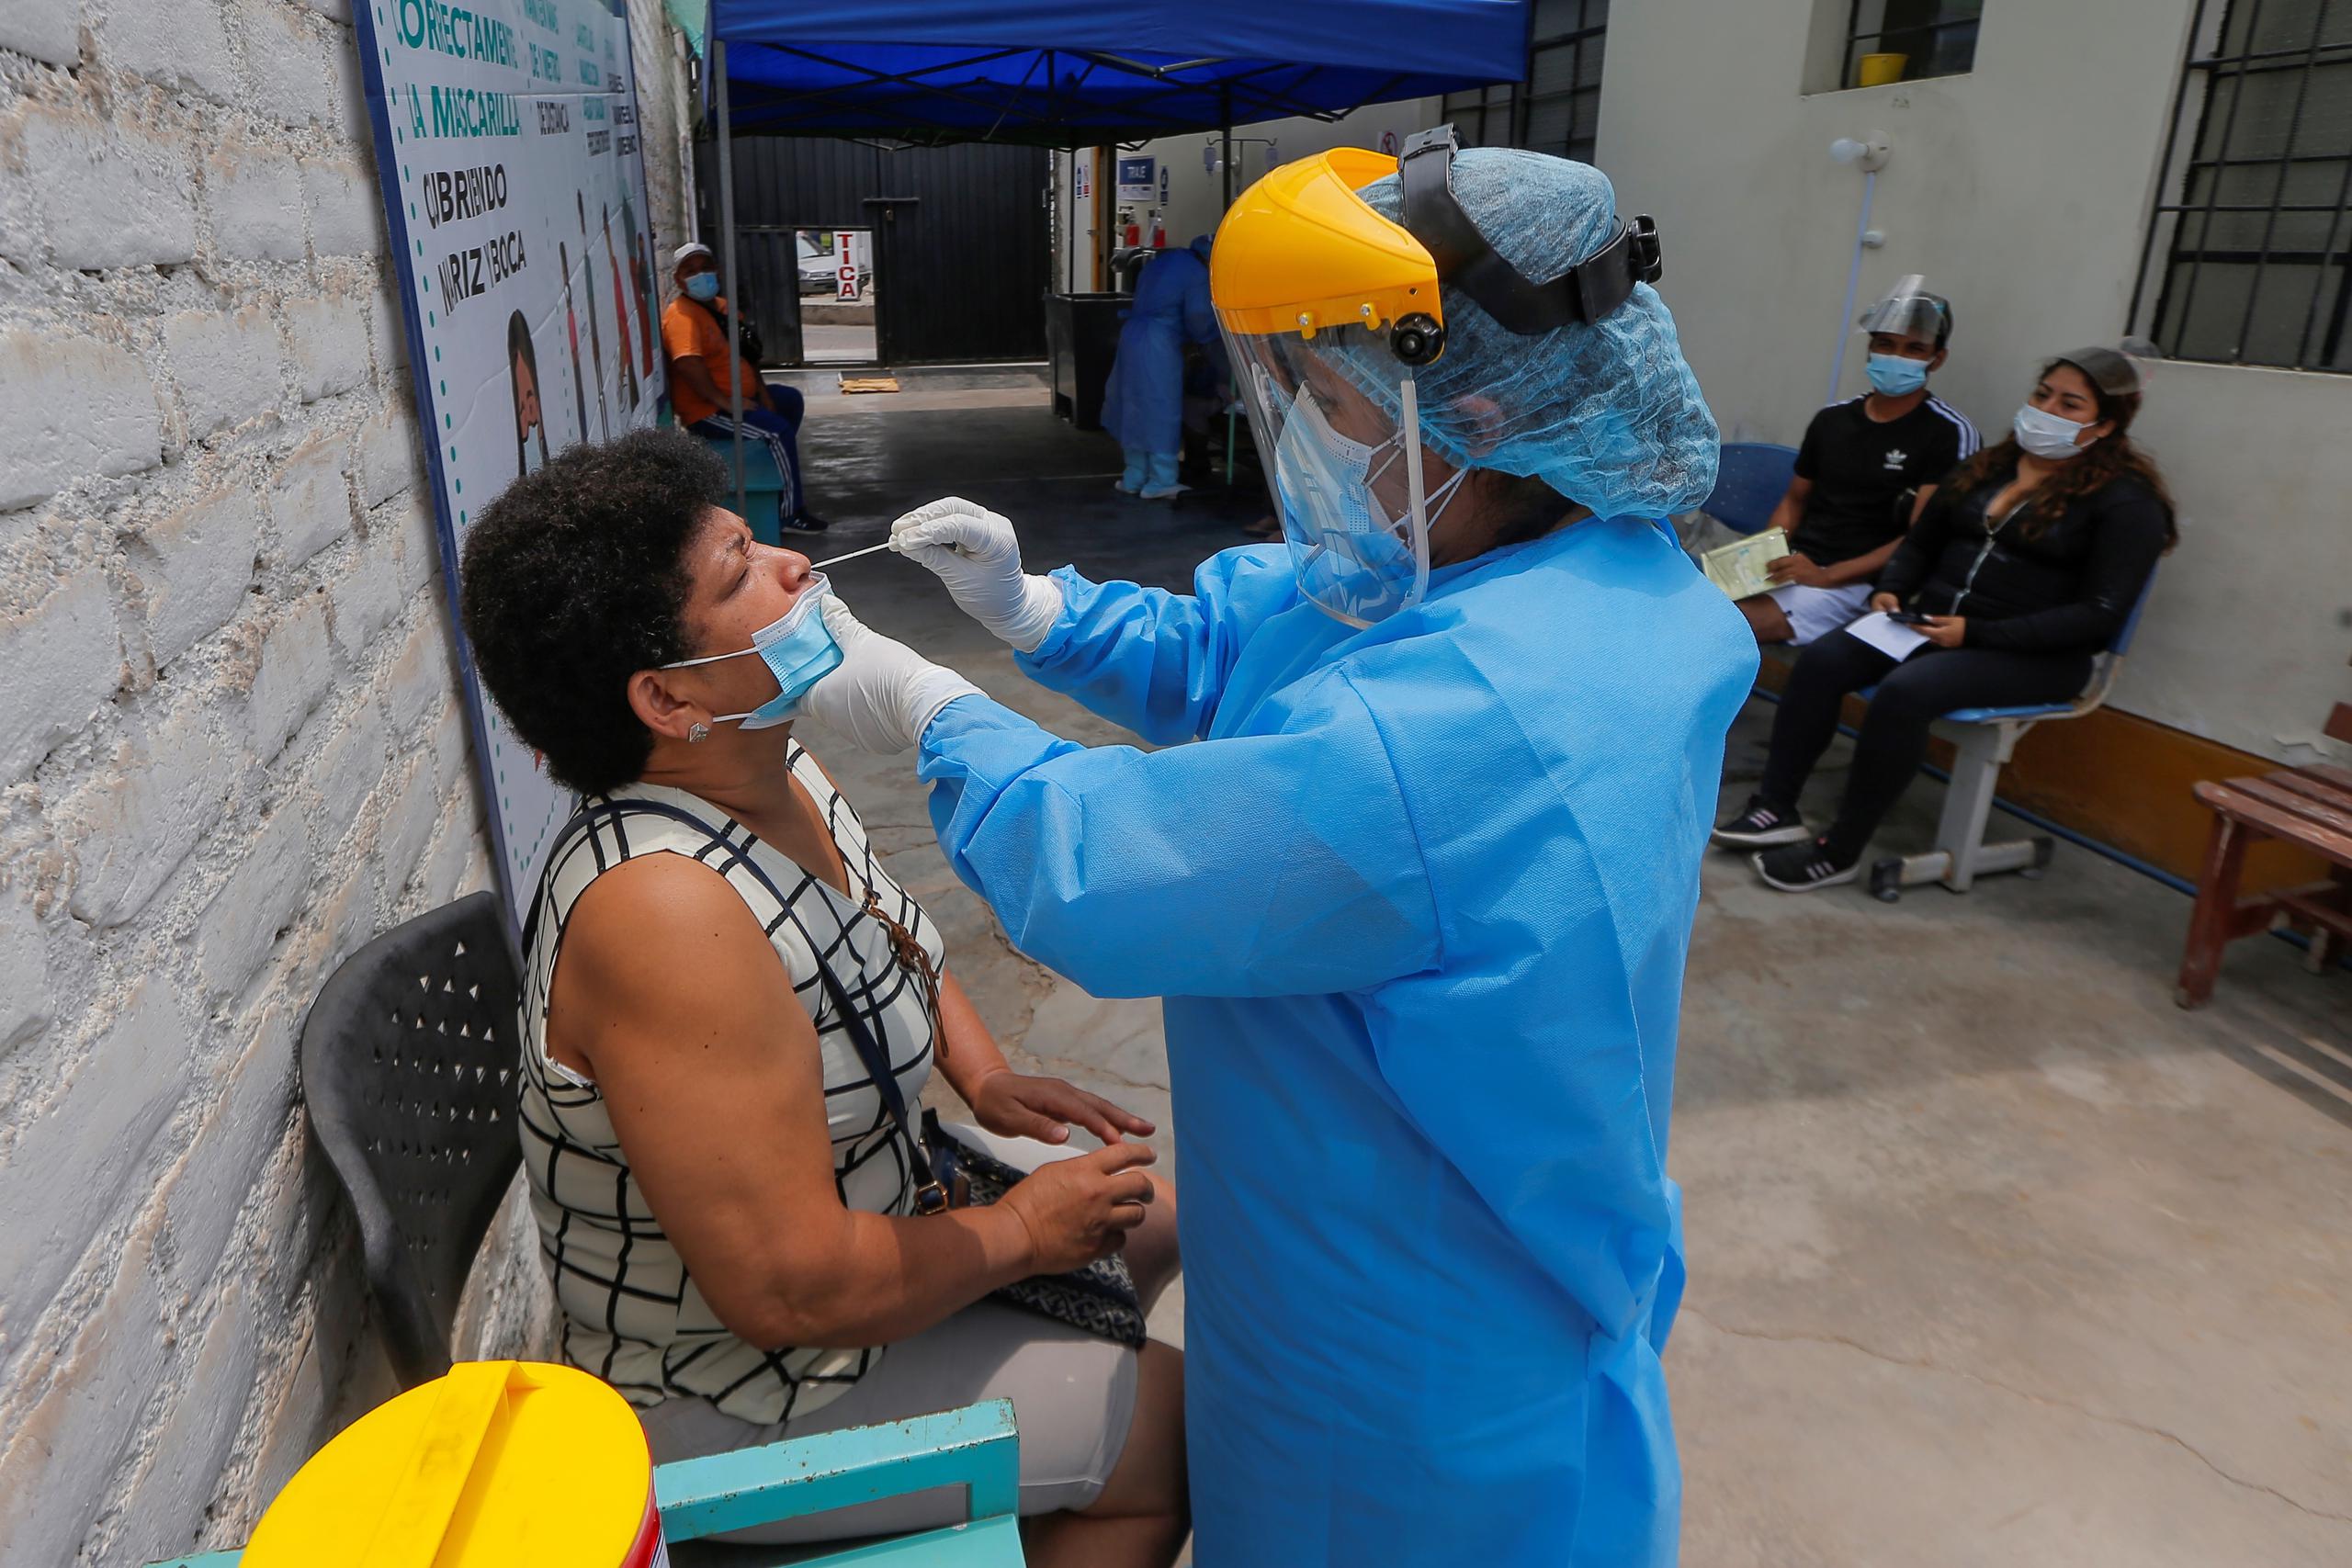 Latinoamérica ha registrado en la pandemia unos 30 millones de casos de COVID-19 y más de 900,000 muertes por la enfermedad, con Brasil como el país de la región más afectado, con 14 millones de contagios y casi 400,000 fallecidos.